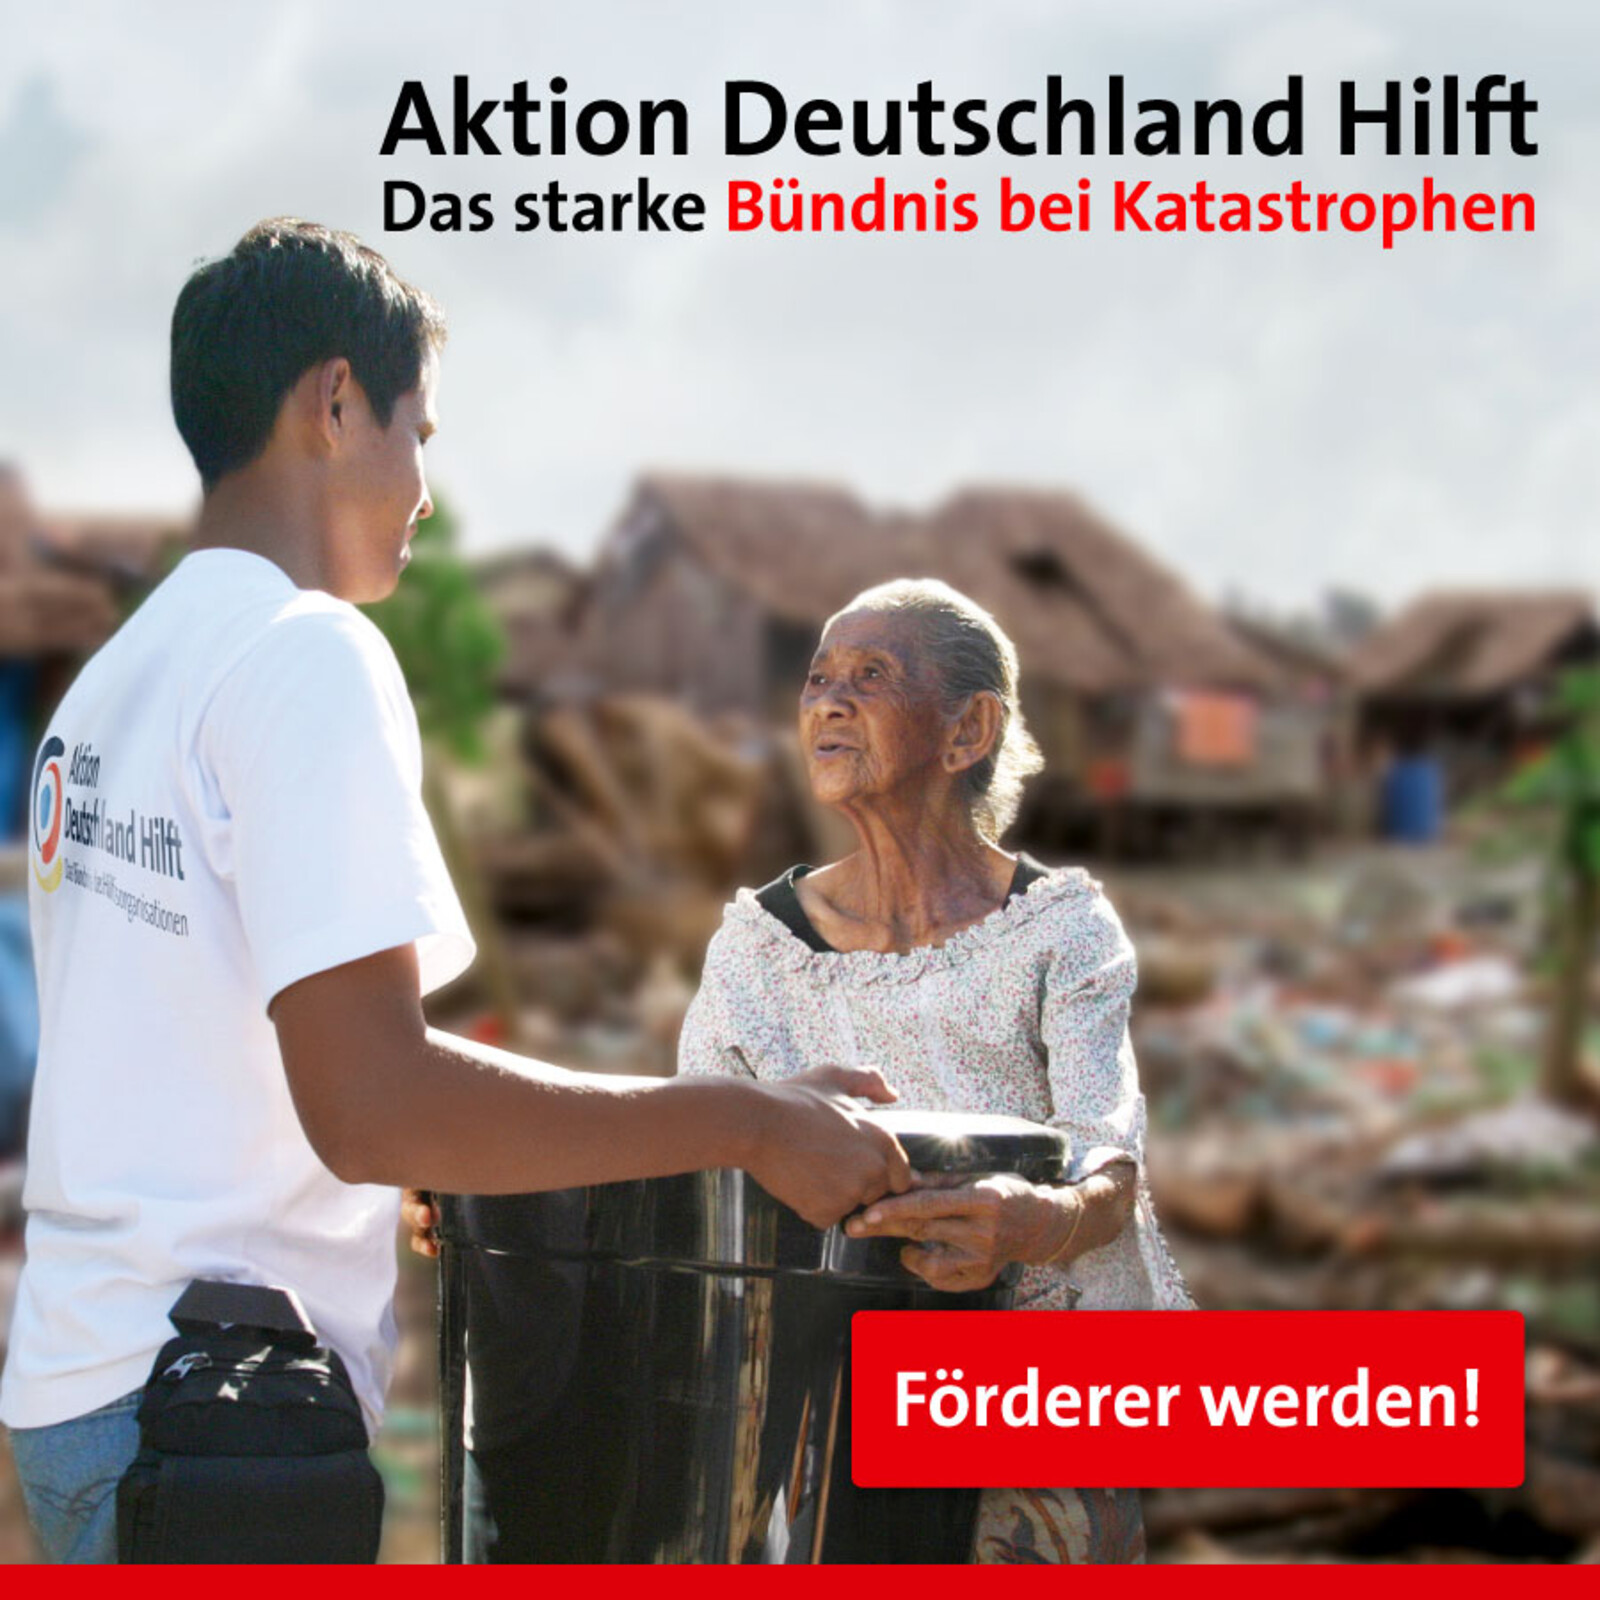 Jetzt Förderer werden bei Aktion Deutschland Hilft! 